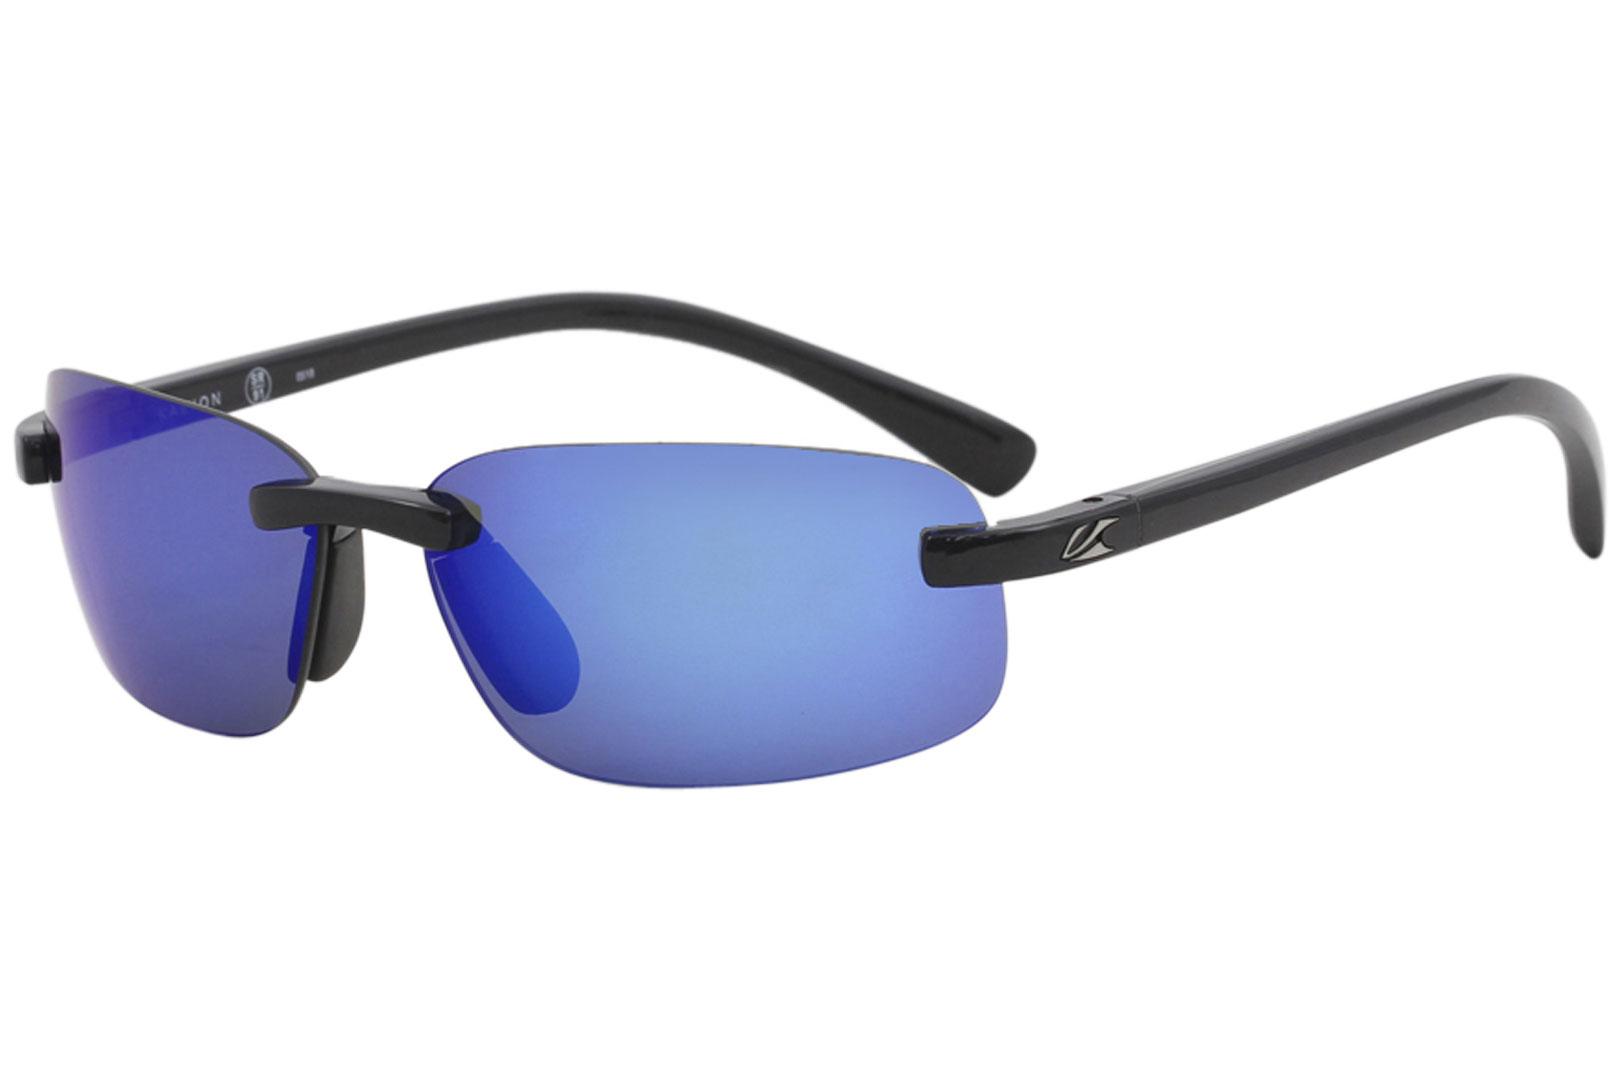 Kaenon Polarized Coto S Black Fashion Rectangle Sunglasses 57mm - Black/Polarized Green Blue Mirror   G12 - Lens 57 Bridge 16 B 36 Temple 135mm